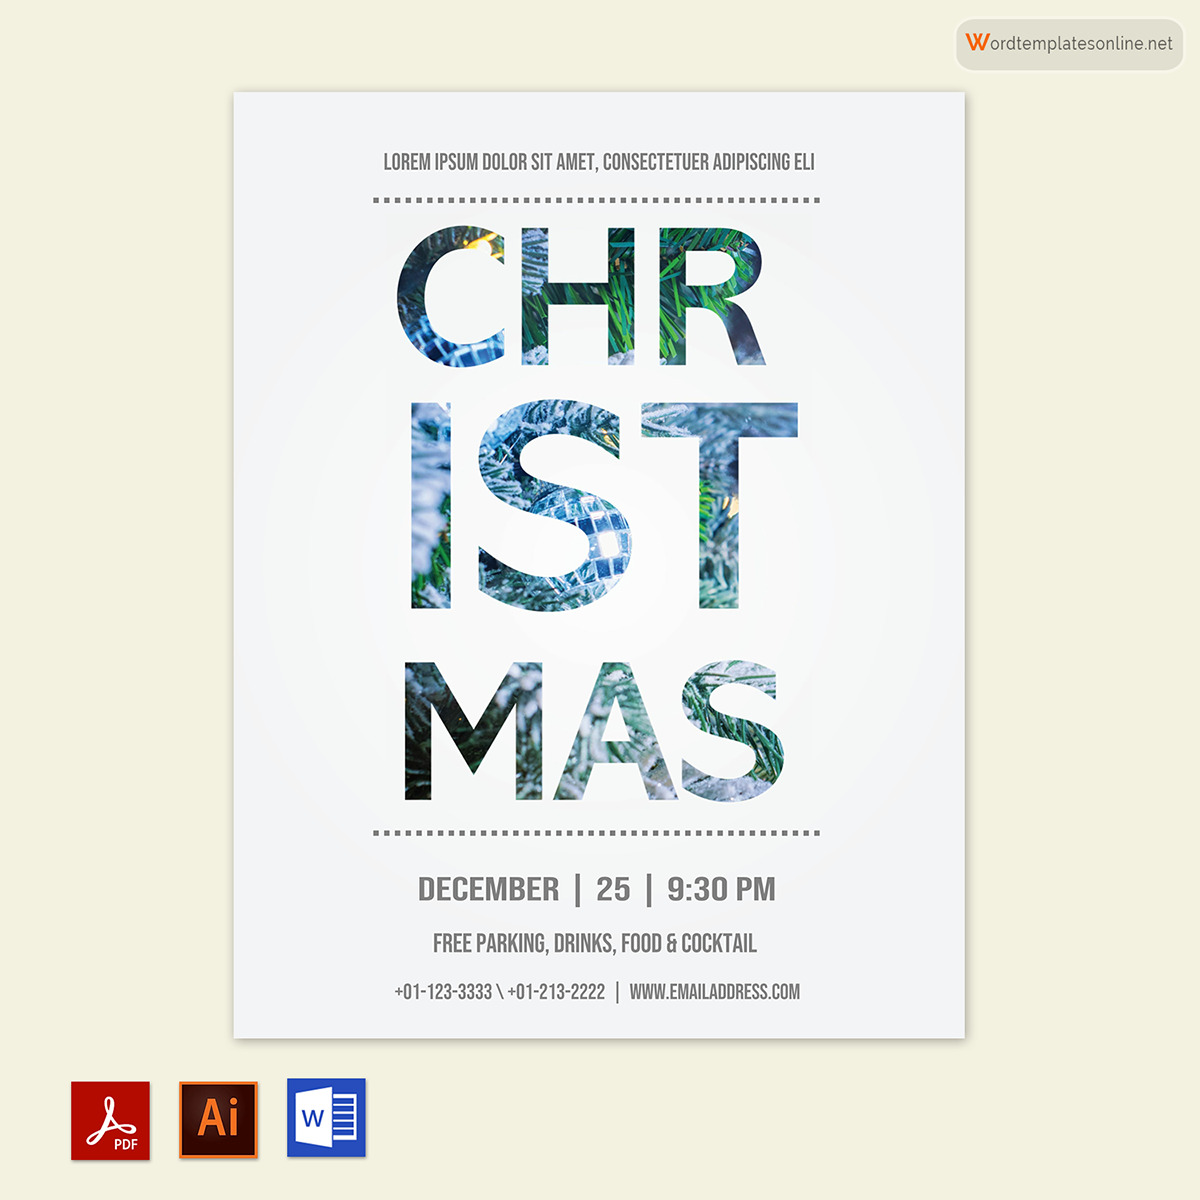 Free printable Christmas flyer templates Word